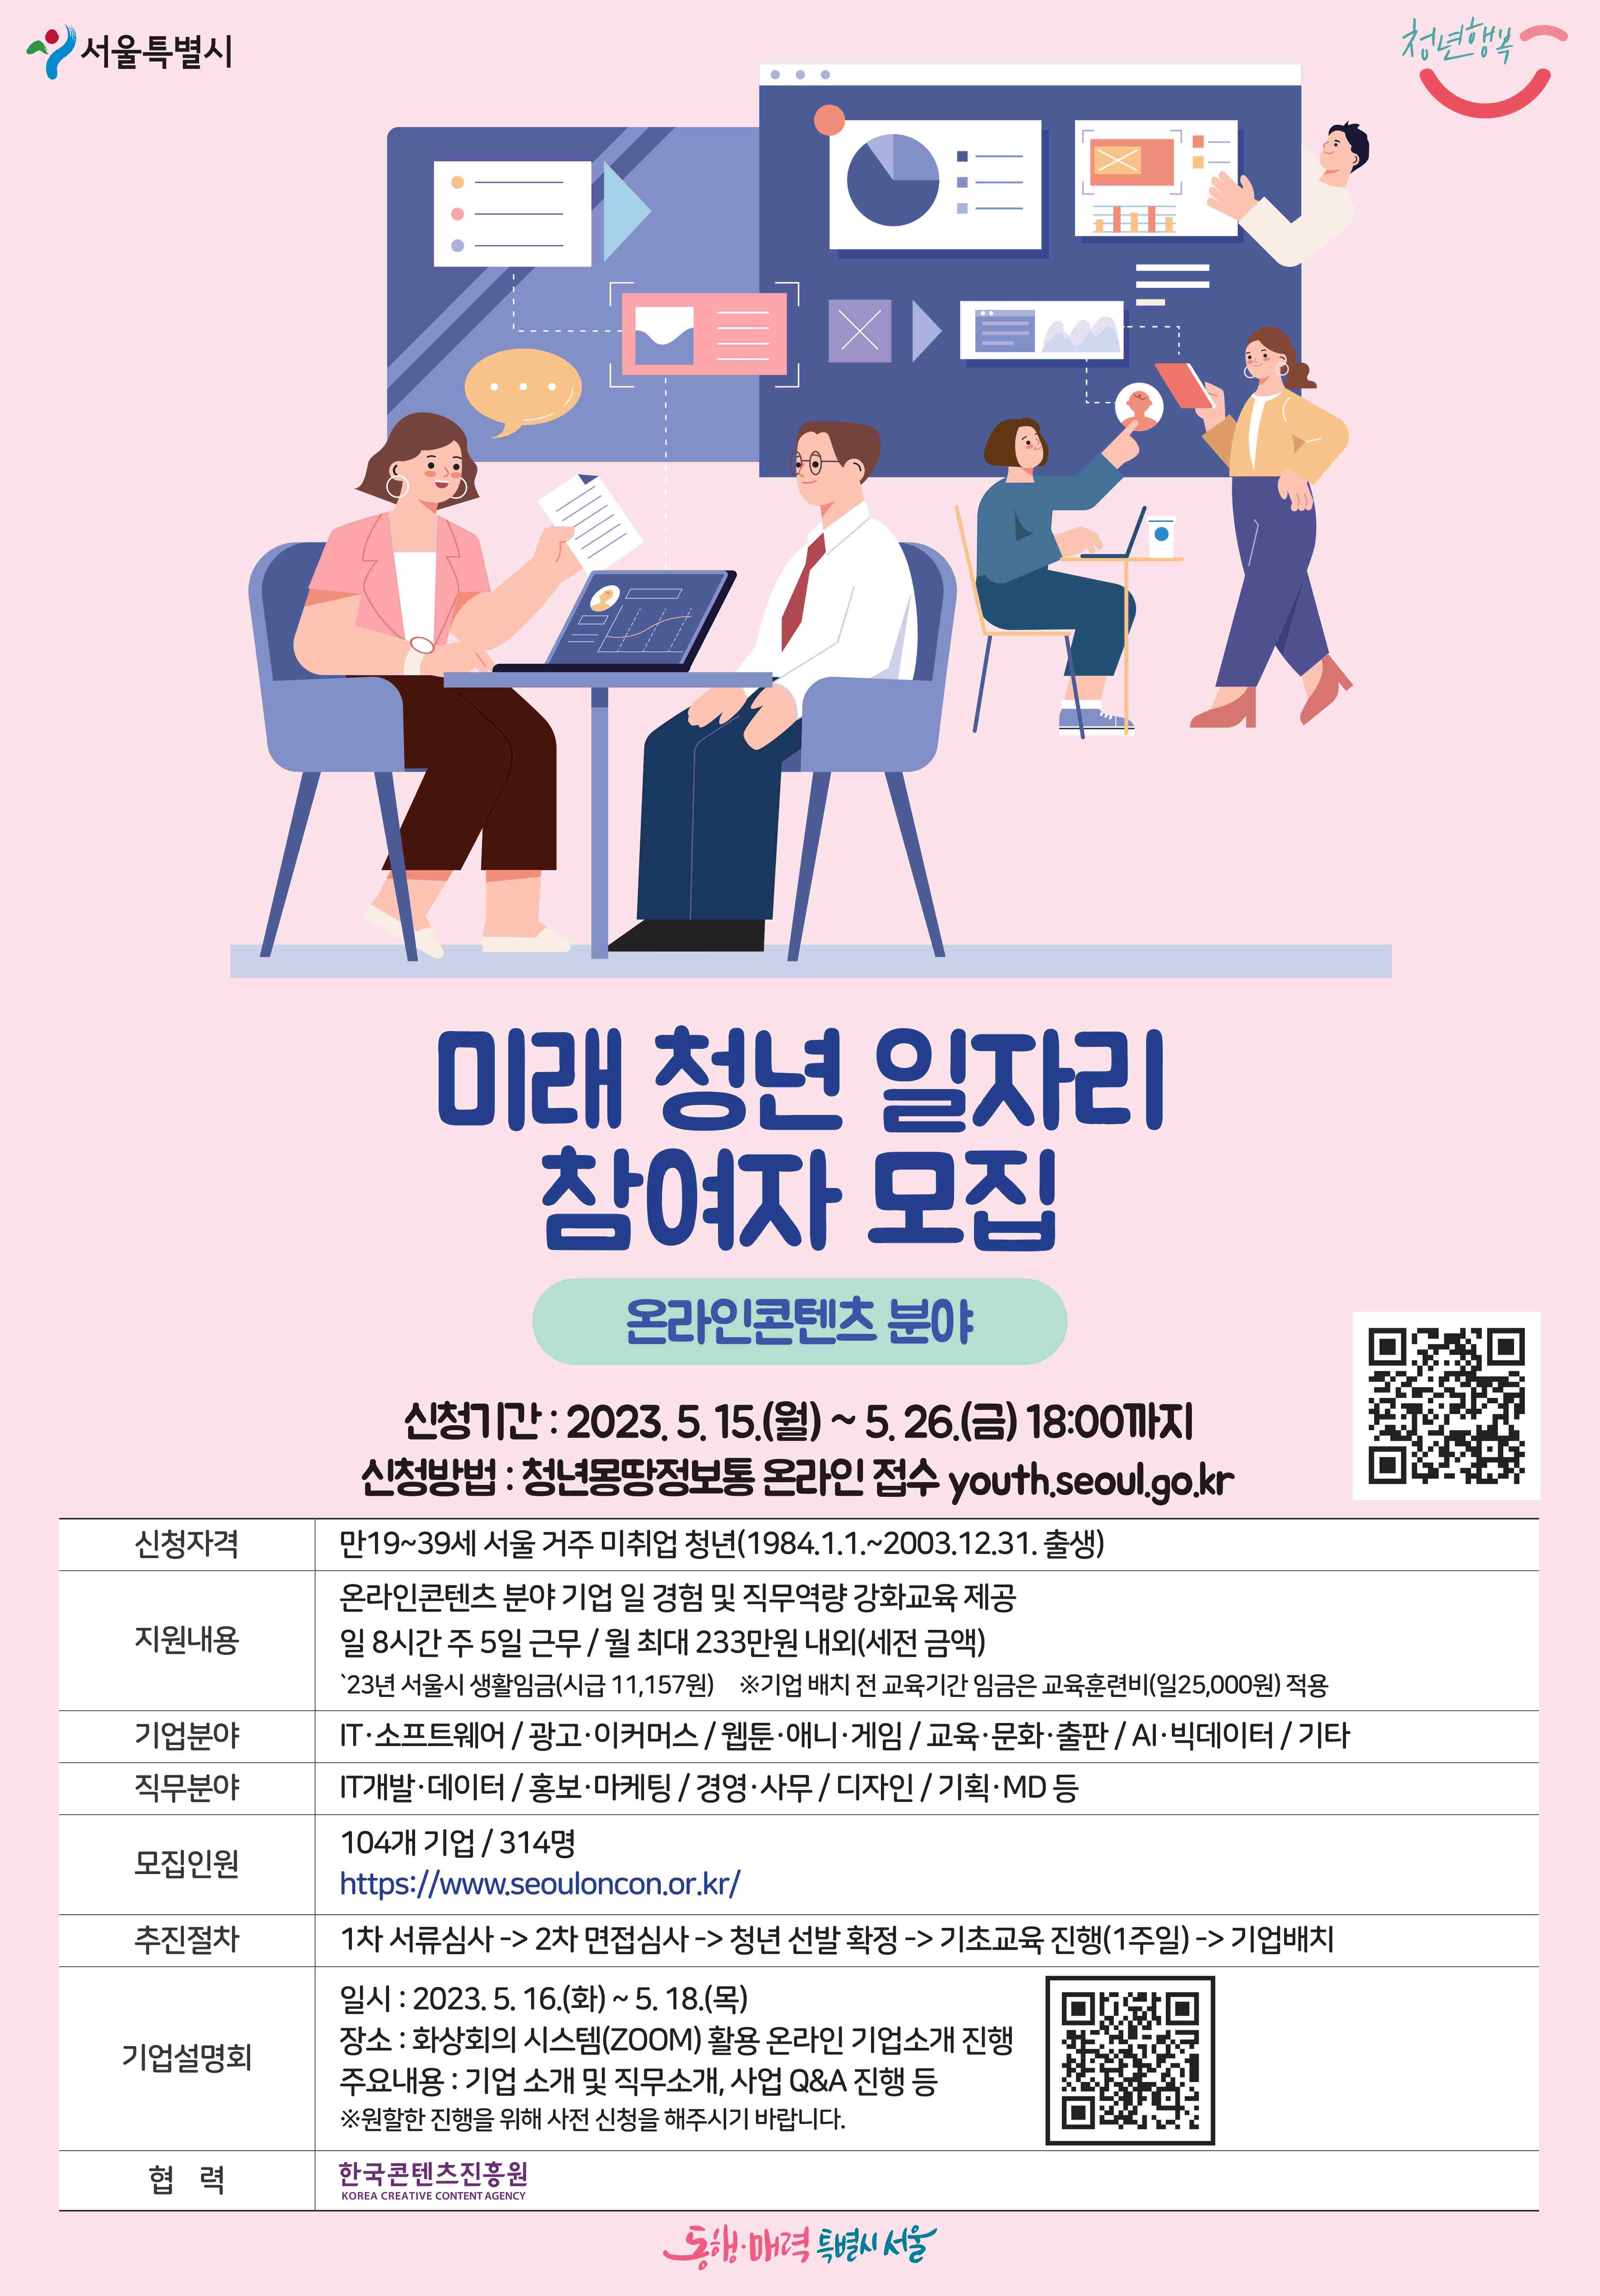 2023 서울시 미래청년 일자리 사업 (온라인 콘텐츠 분야)  참여자 모집